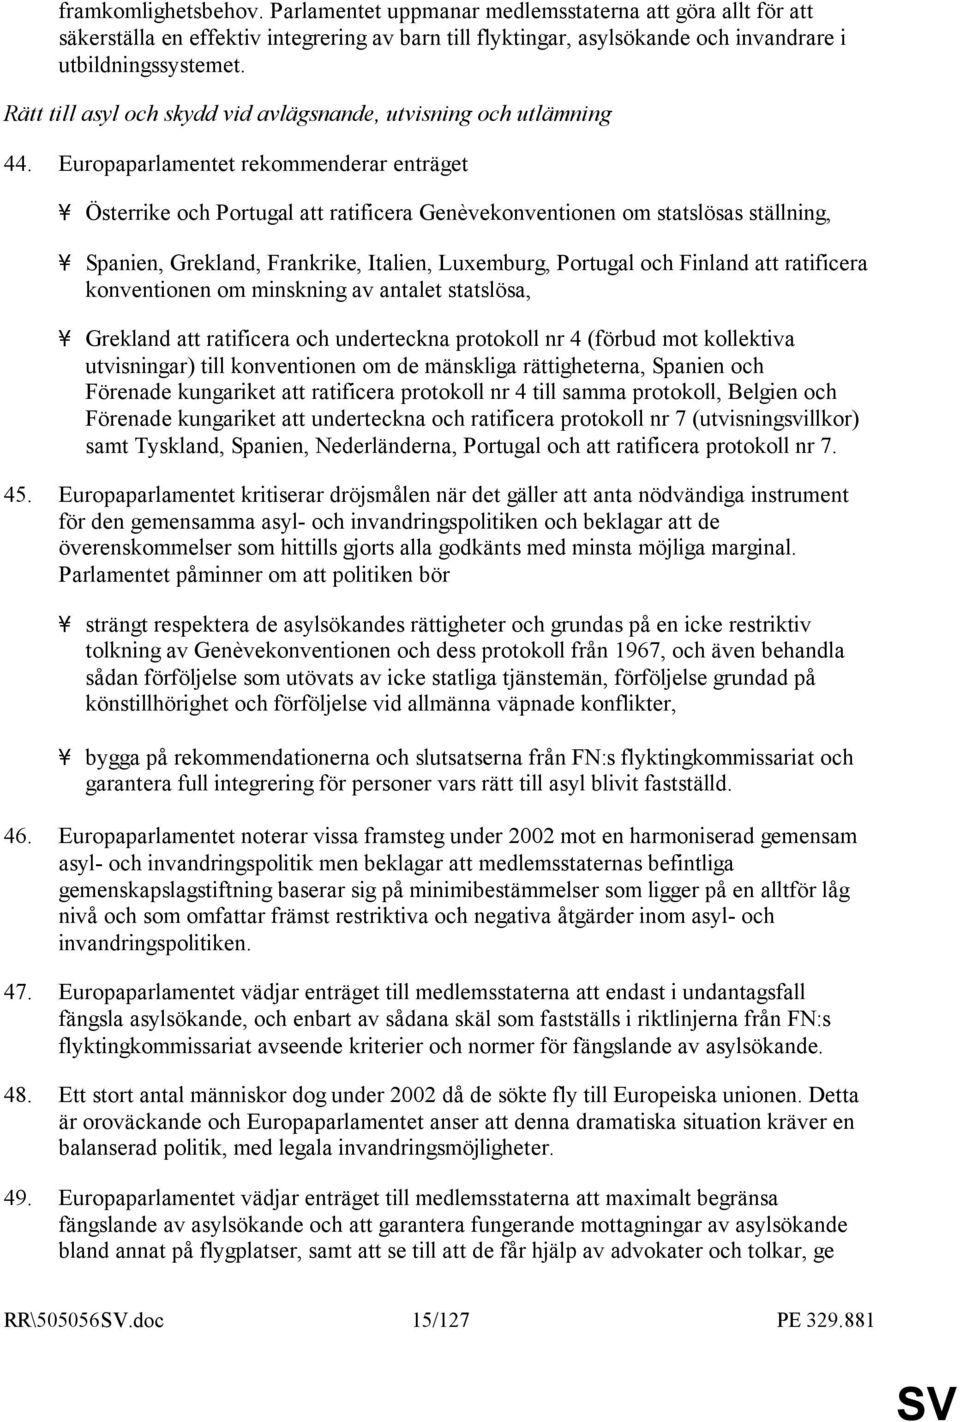 Europaparlamentet rekommenderar enträget - Österrike och Portugal att ratificera Genèvekonventionen om statslösas ställning, - Spanien, Grekland, Frankrike, Italien, Luxemburg, Portugal och Finland